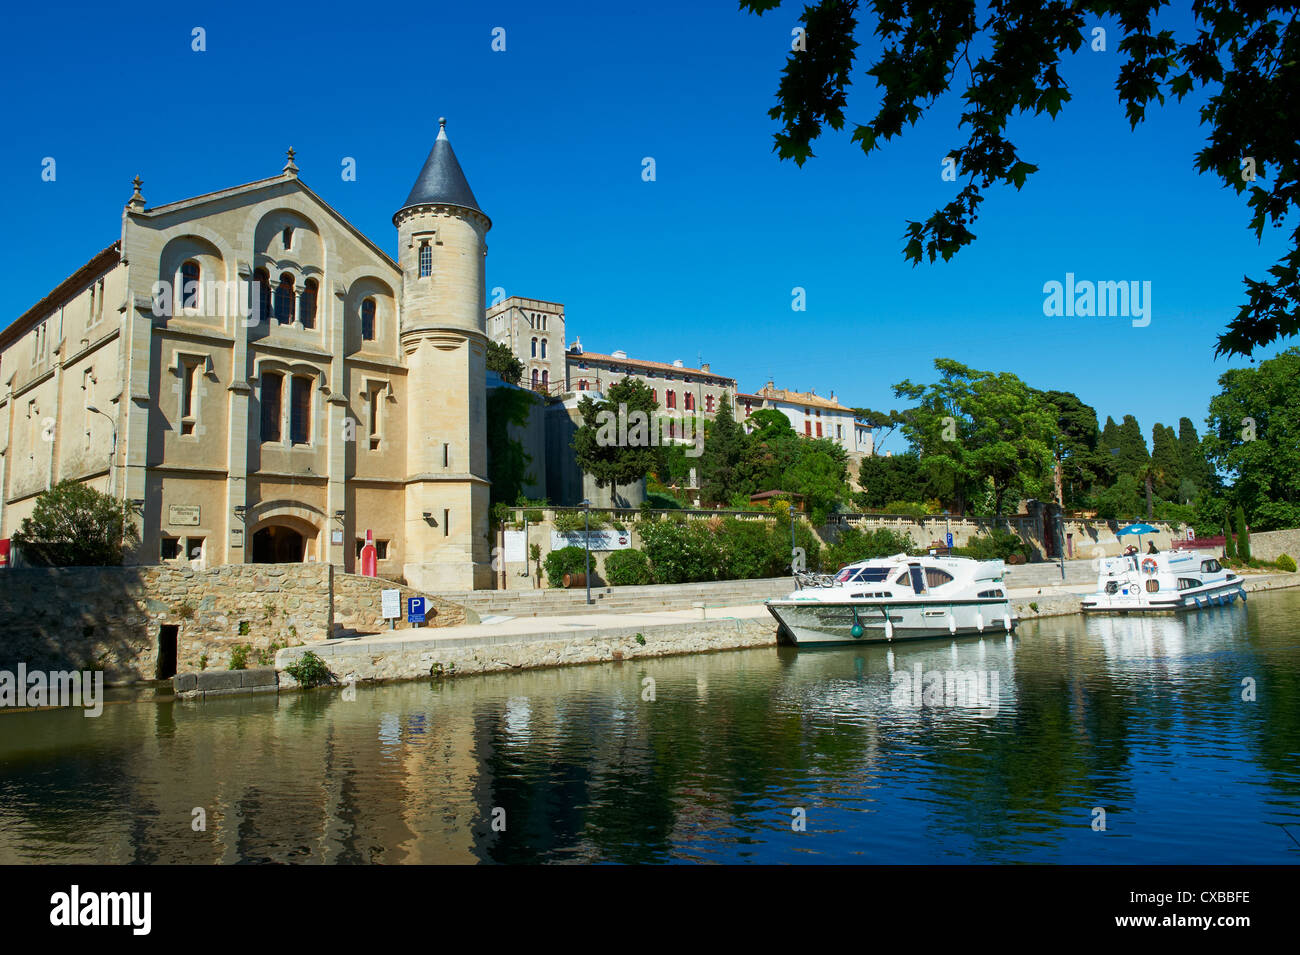 Die Burg von Ventenac-de-Minervois, Schifffahrt auf dem Canal du Midi, Aude, Languedoc Roussillon, Frankreich Stockfoto